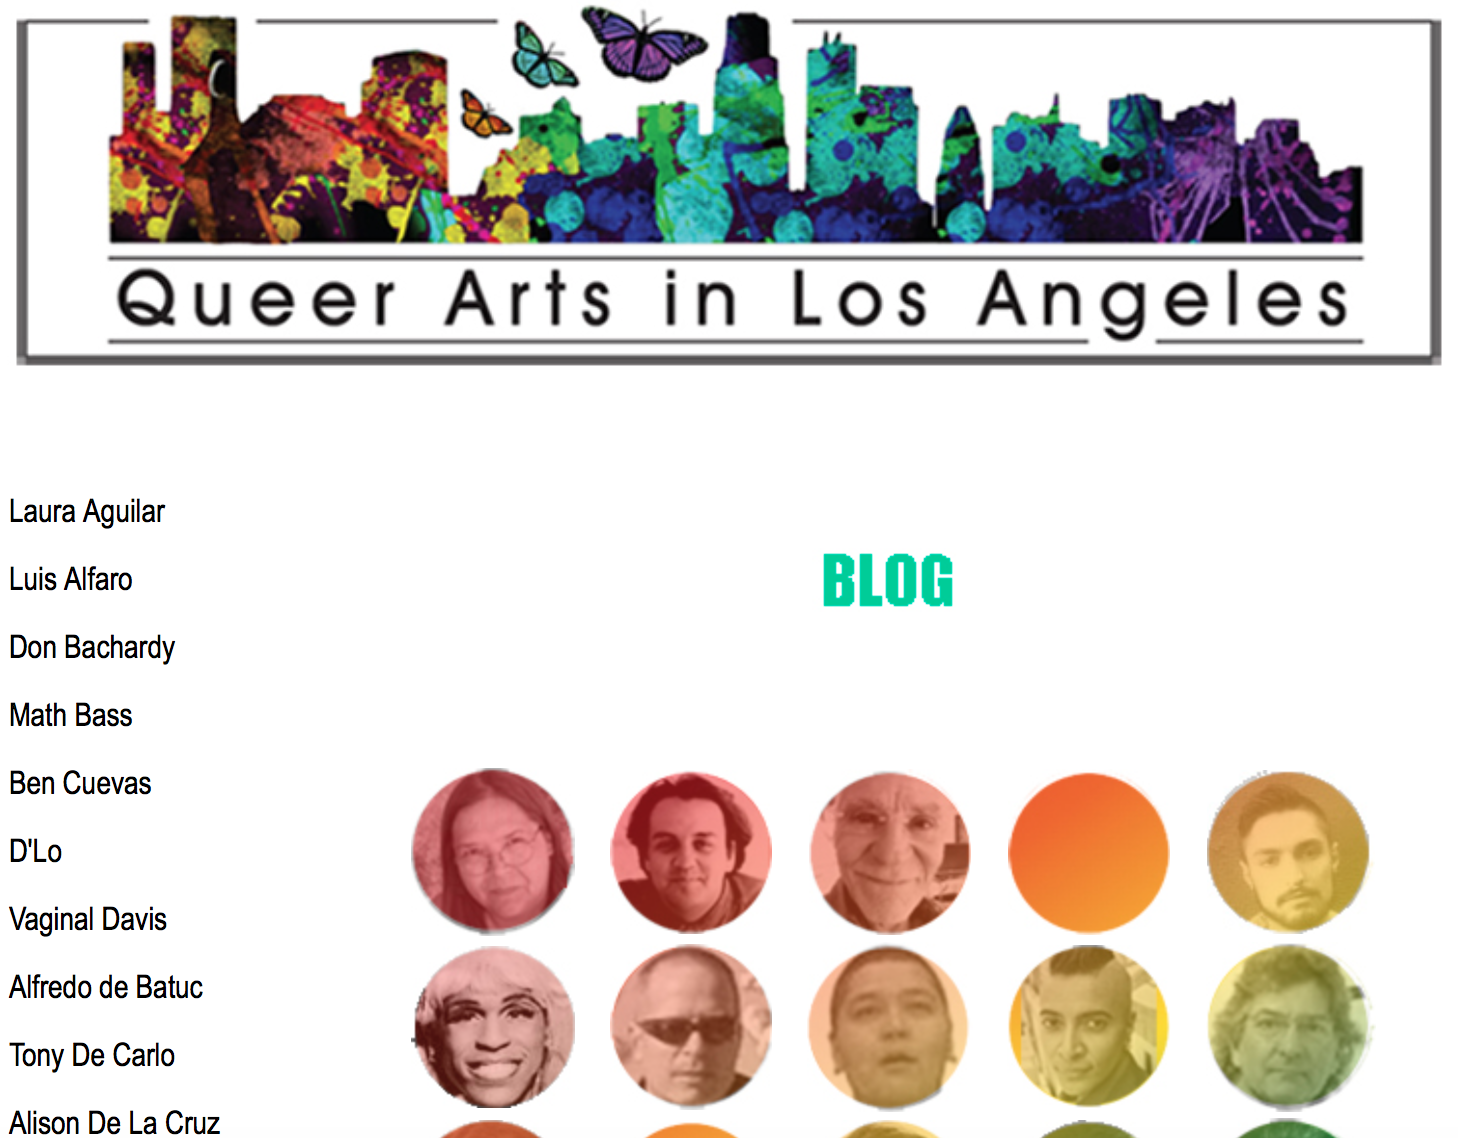 Queer Arts in LA website image